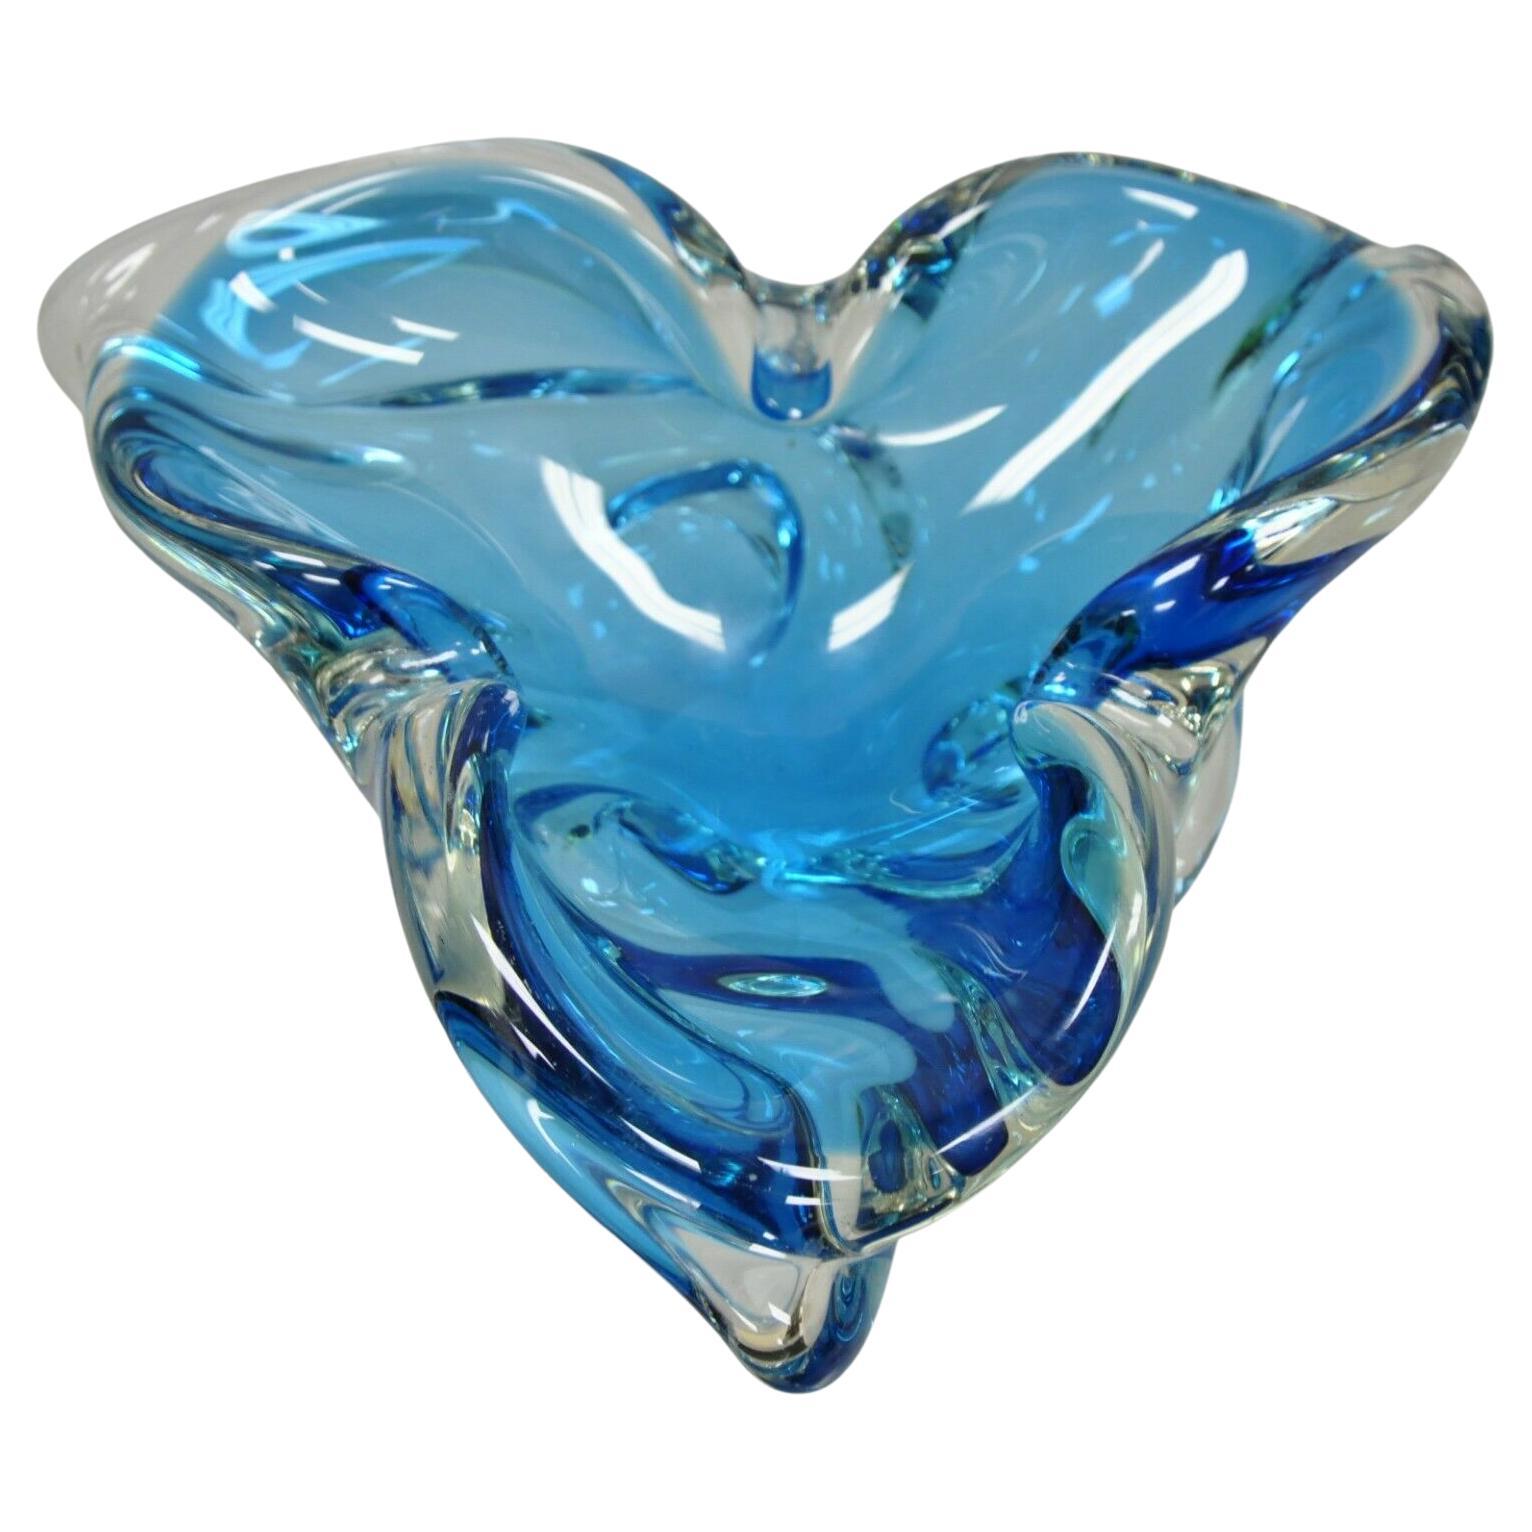 Vieux bol en verre soufflé bleu de Murano de style Trefoil, moderne du milieu du siècle dernier